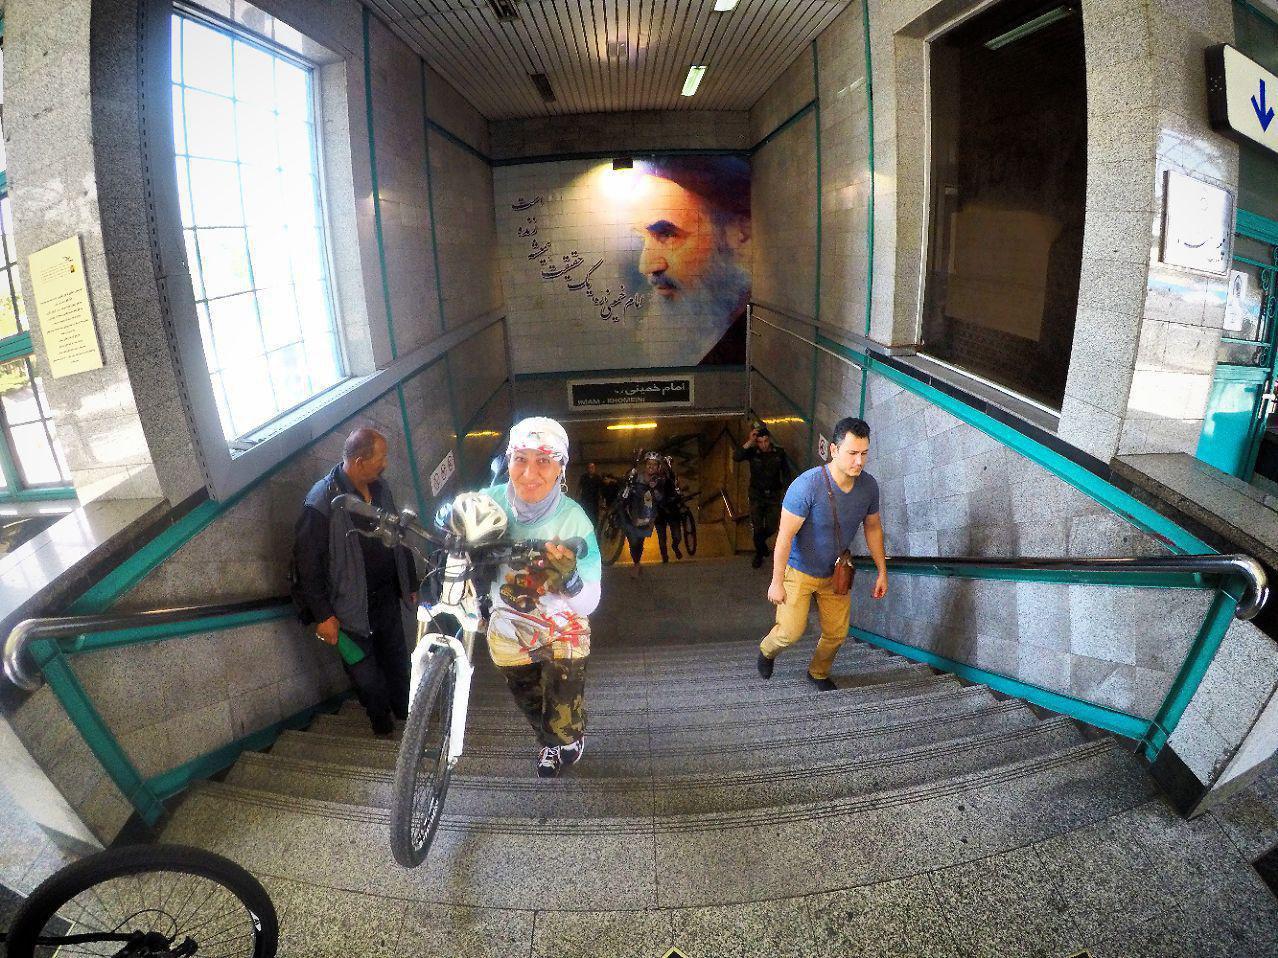 دوچرخه در متروی تهران